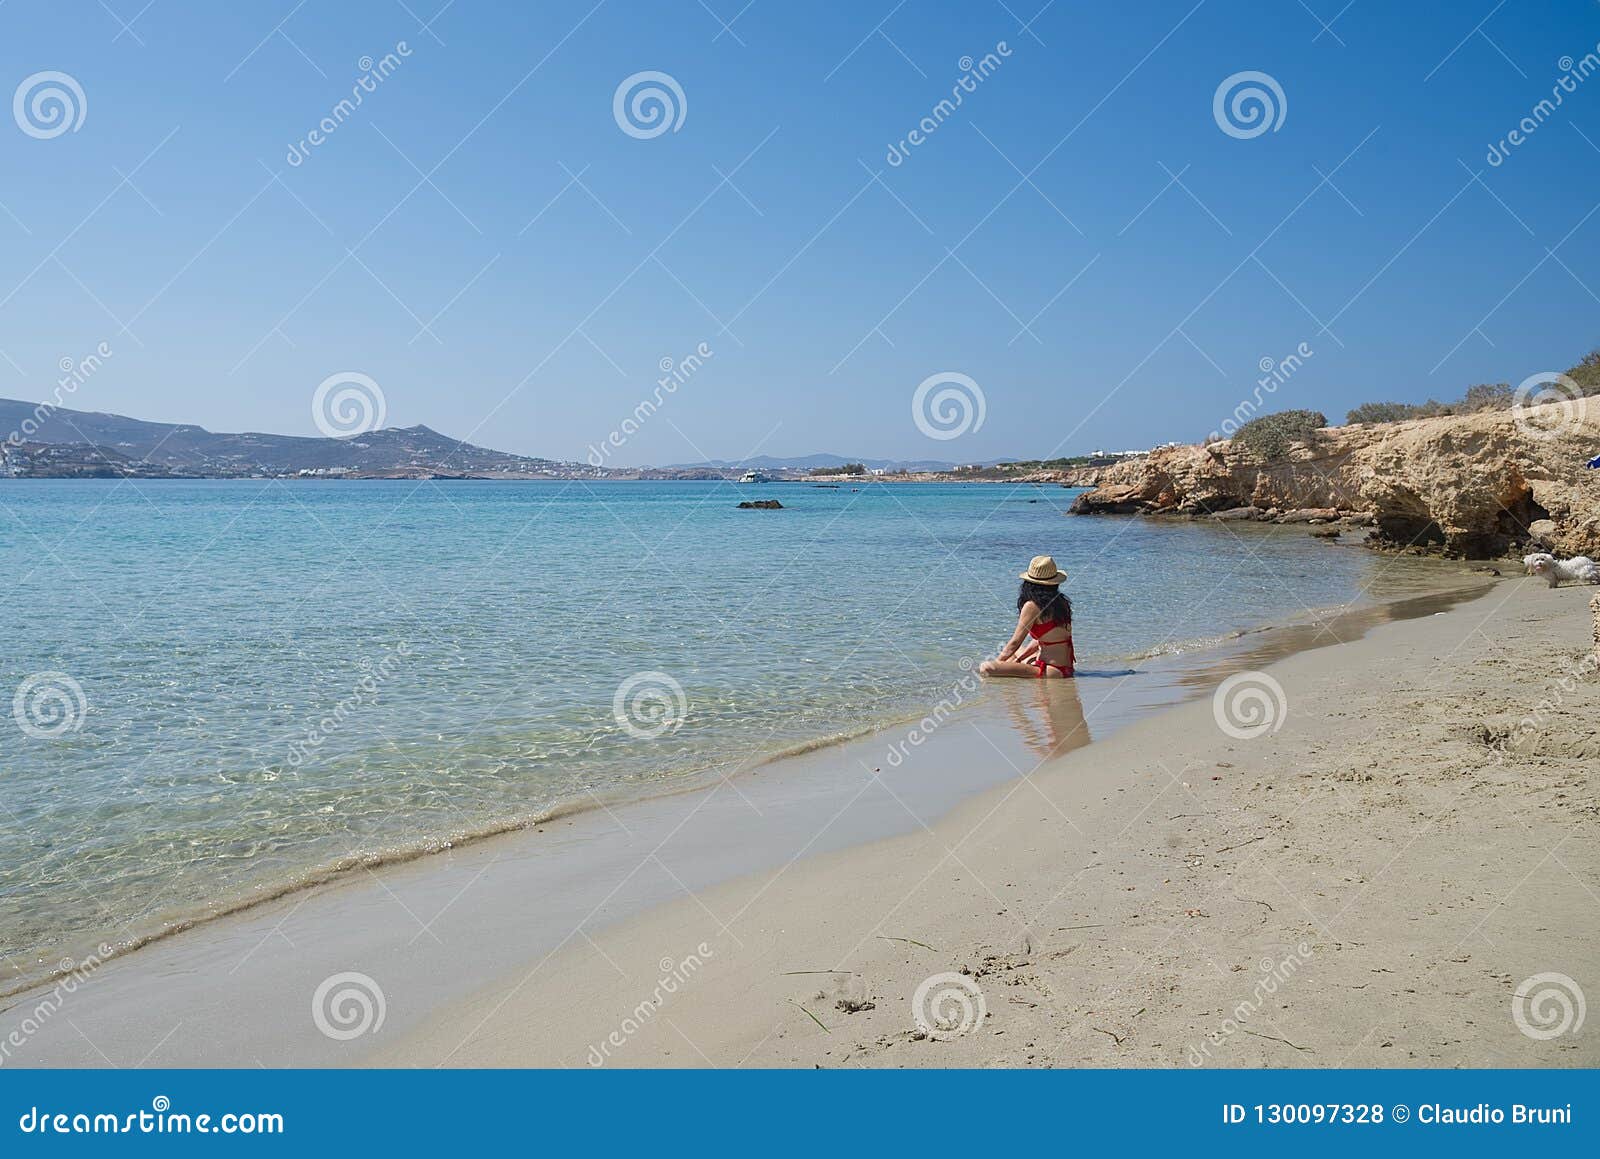 marcello beach - cyclades island - paroikia parikia paros - greece